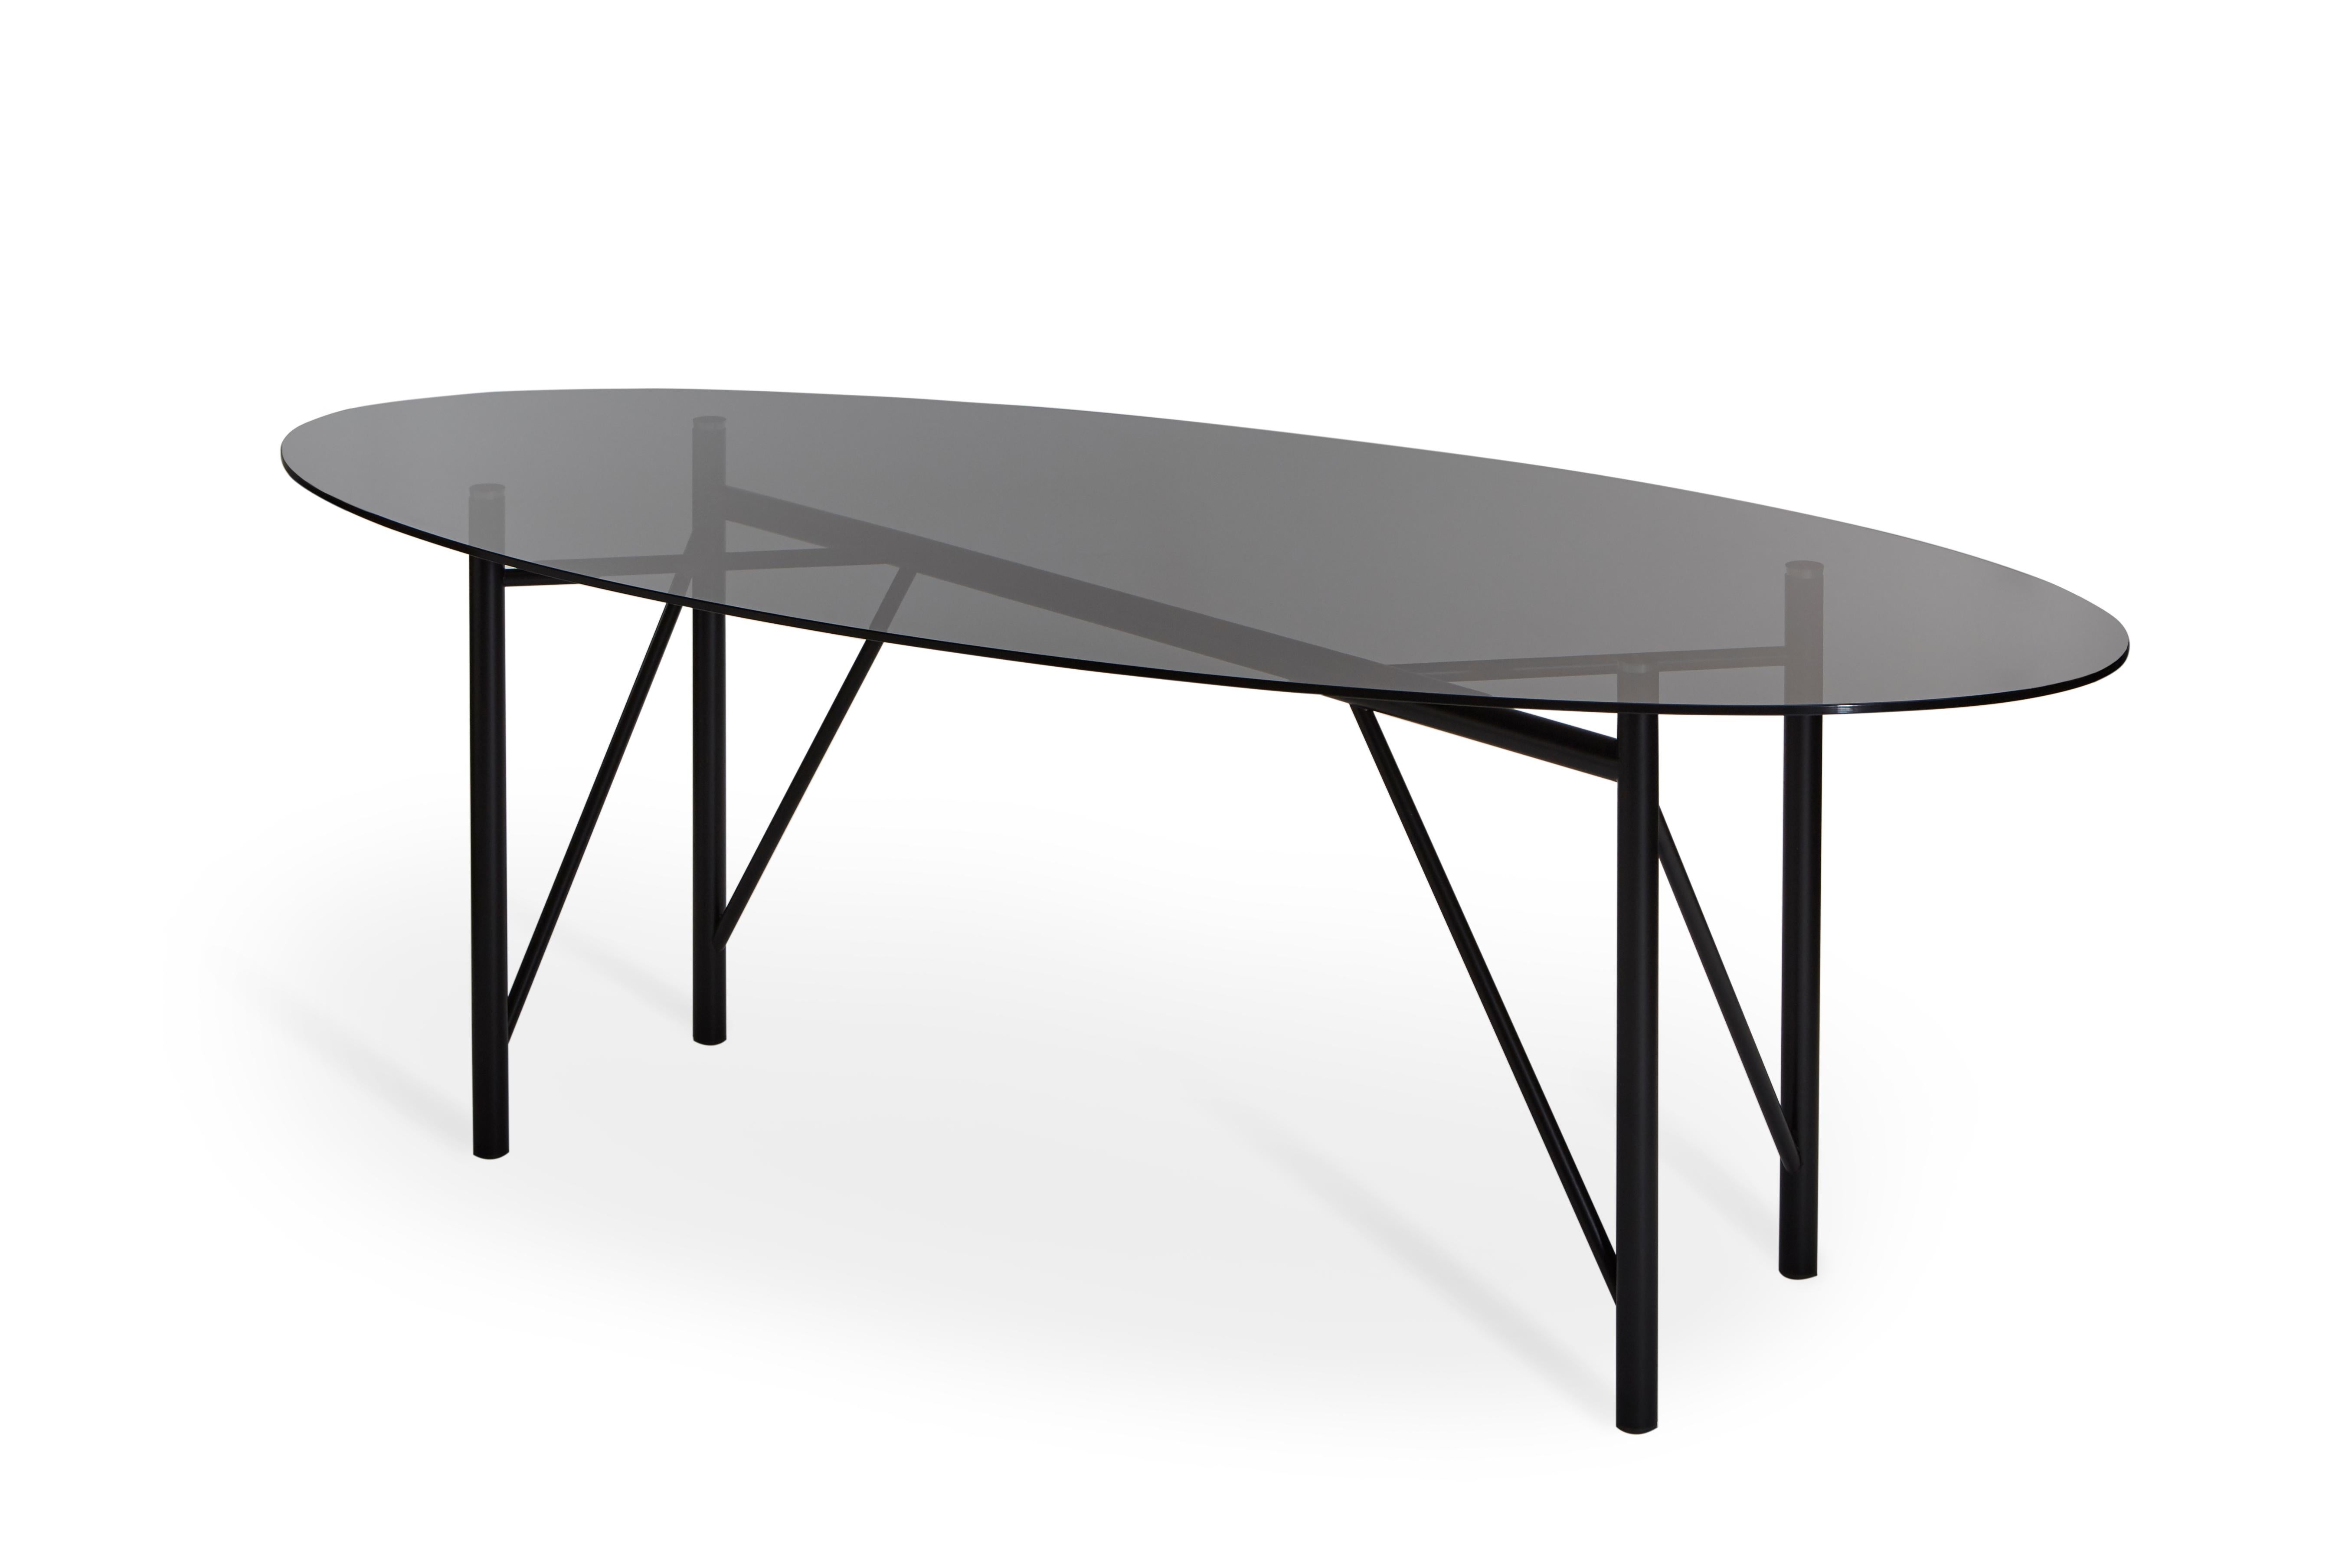 Nero table tubulaire ovale par Mentemano
Dimensions : L220 x P 100 x H 75 cm
MATERIAL : base noire, plateau gris fumé.

Le projet est basé sur la légèreté et l'attention portée aux détails. Les volumes et les lignes sont le résultat d'un processus